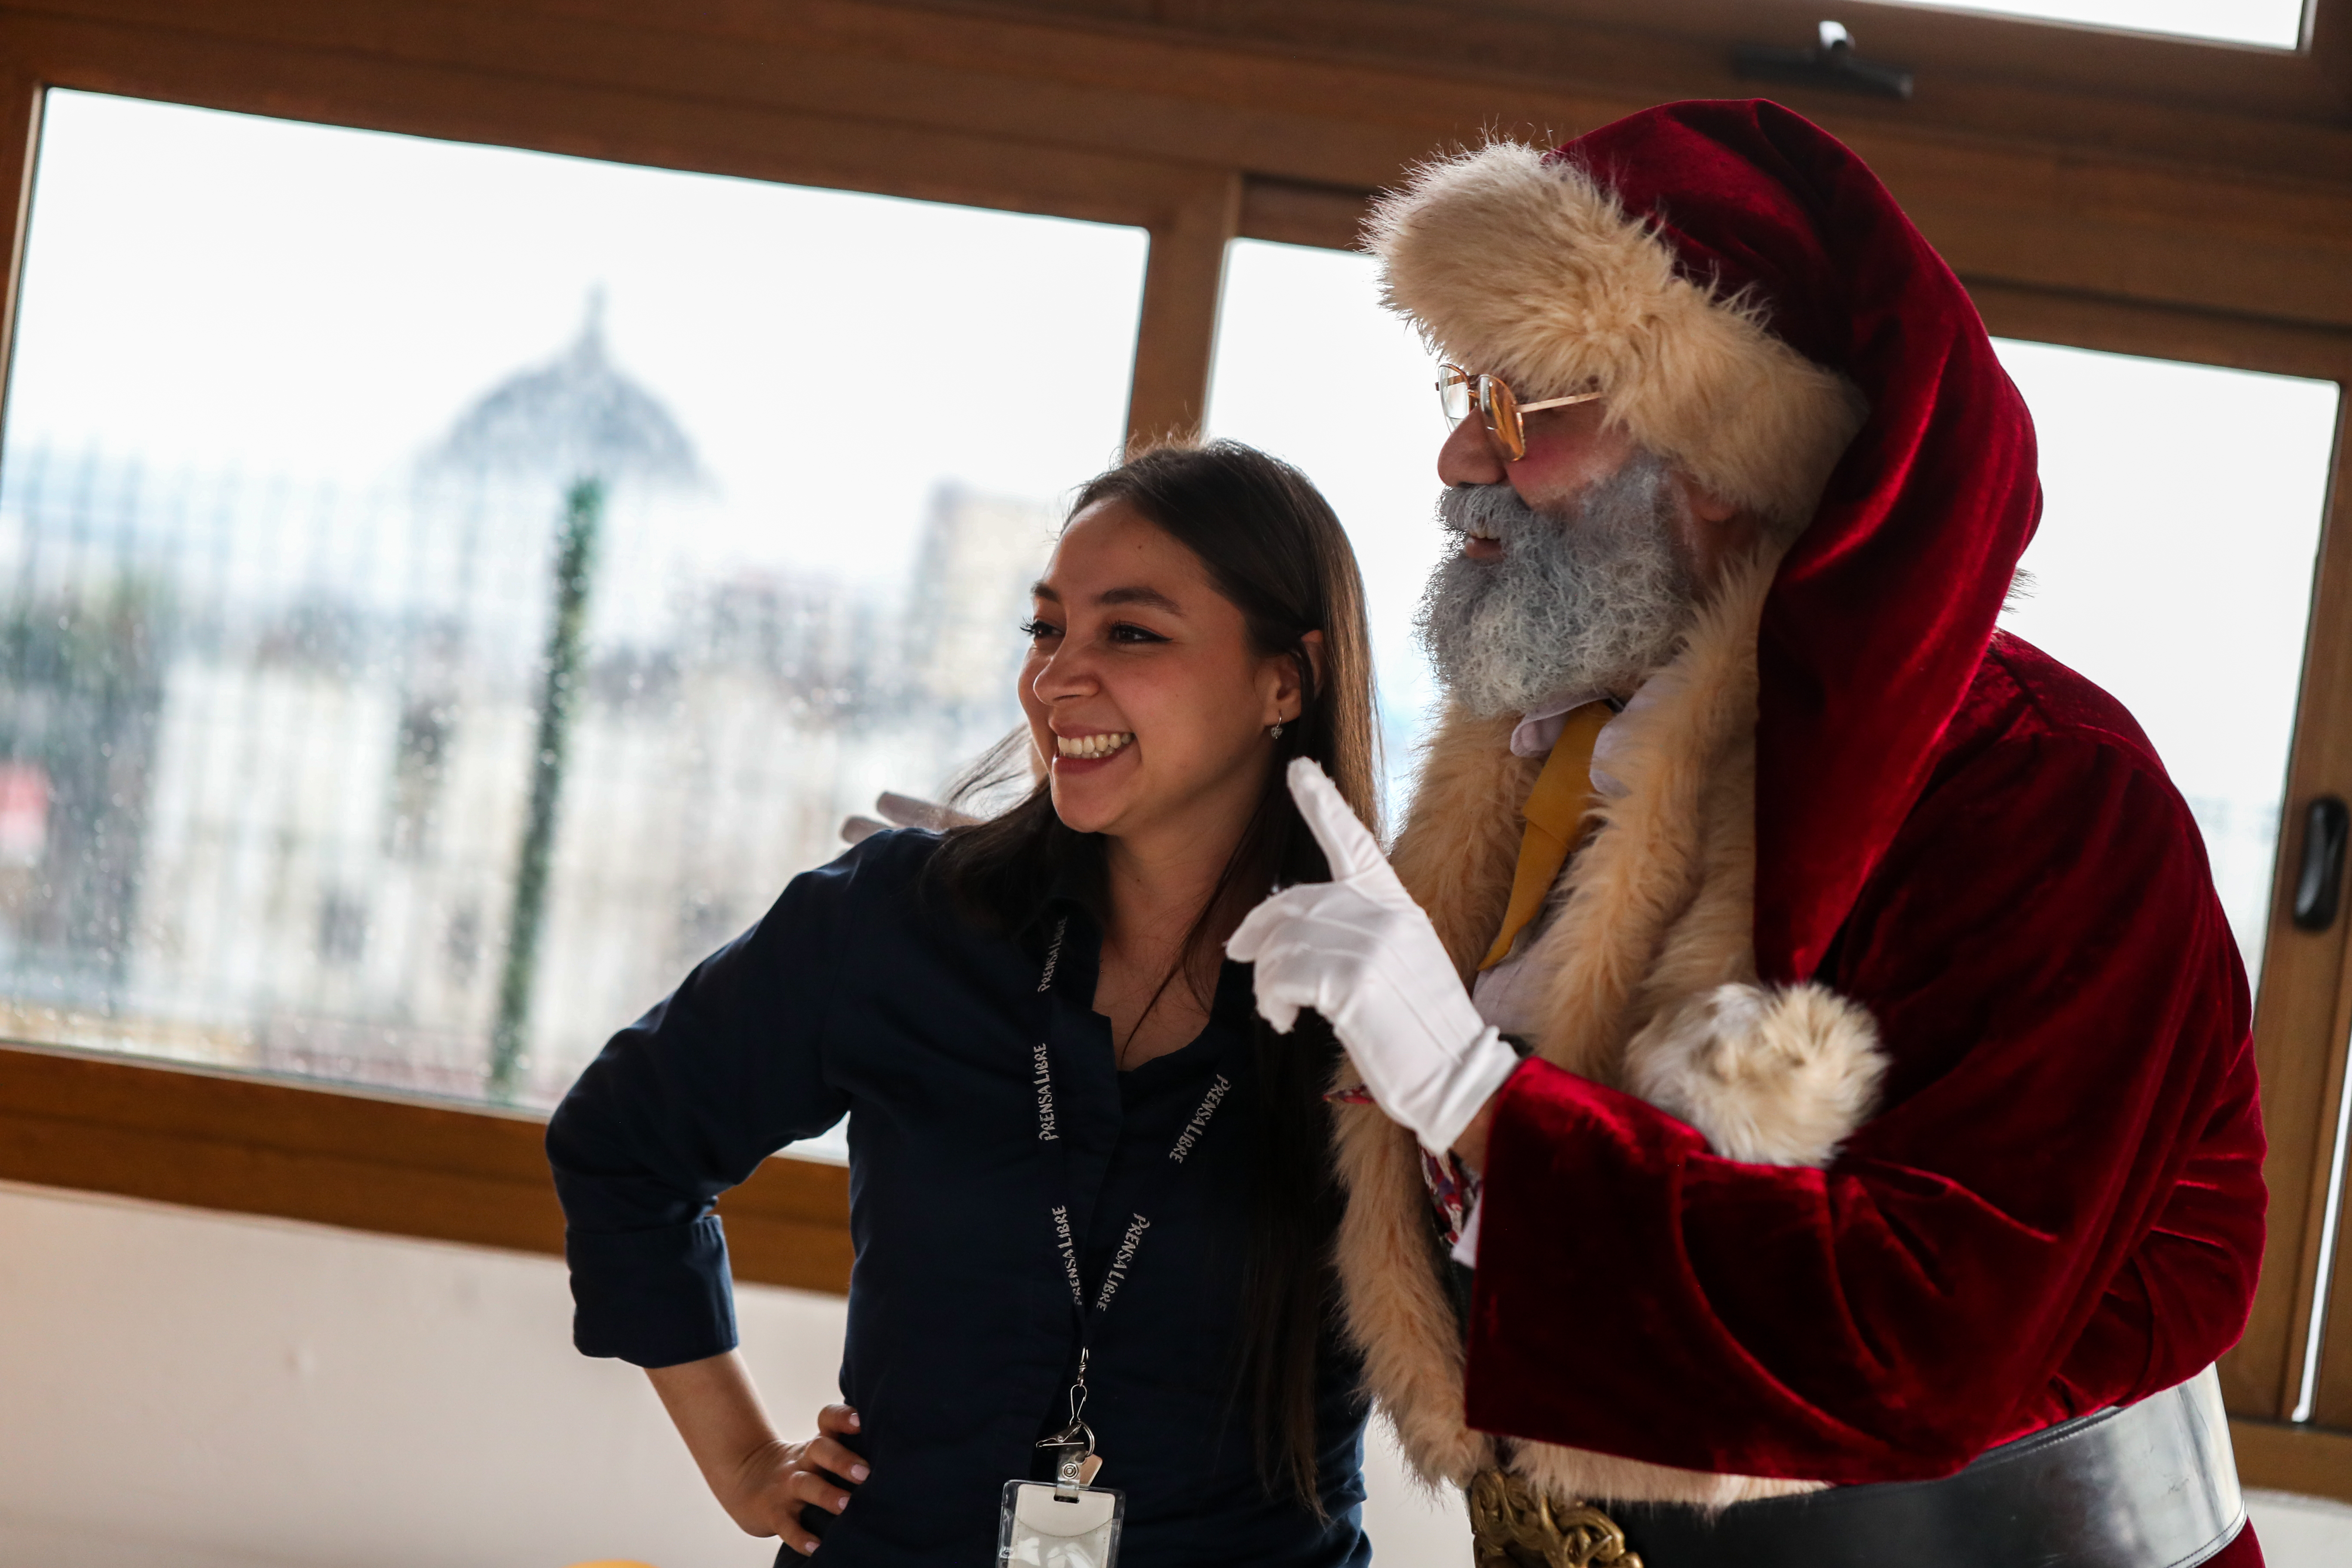 La emoción de encontrar a Santa Claus en el mes de junio causó que muchas personas le pidieran fotografías al Papá Noel Chapín. (Foto Prensa Libre: Juan Diego González) 